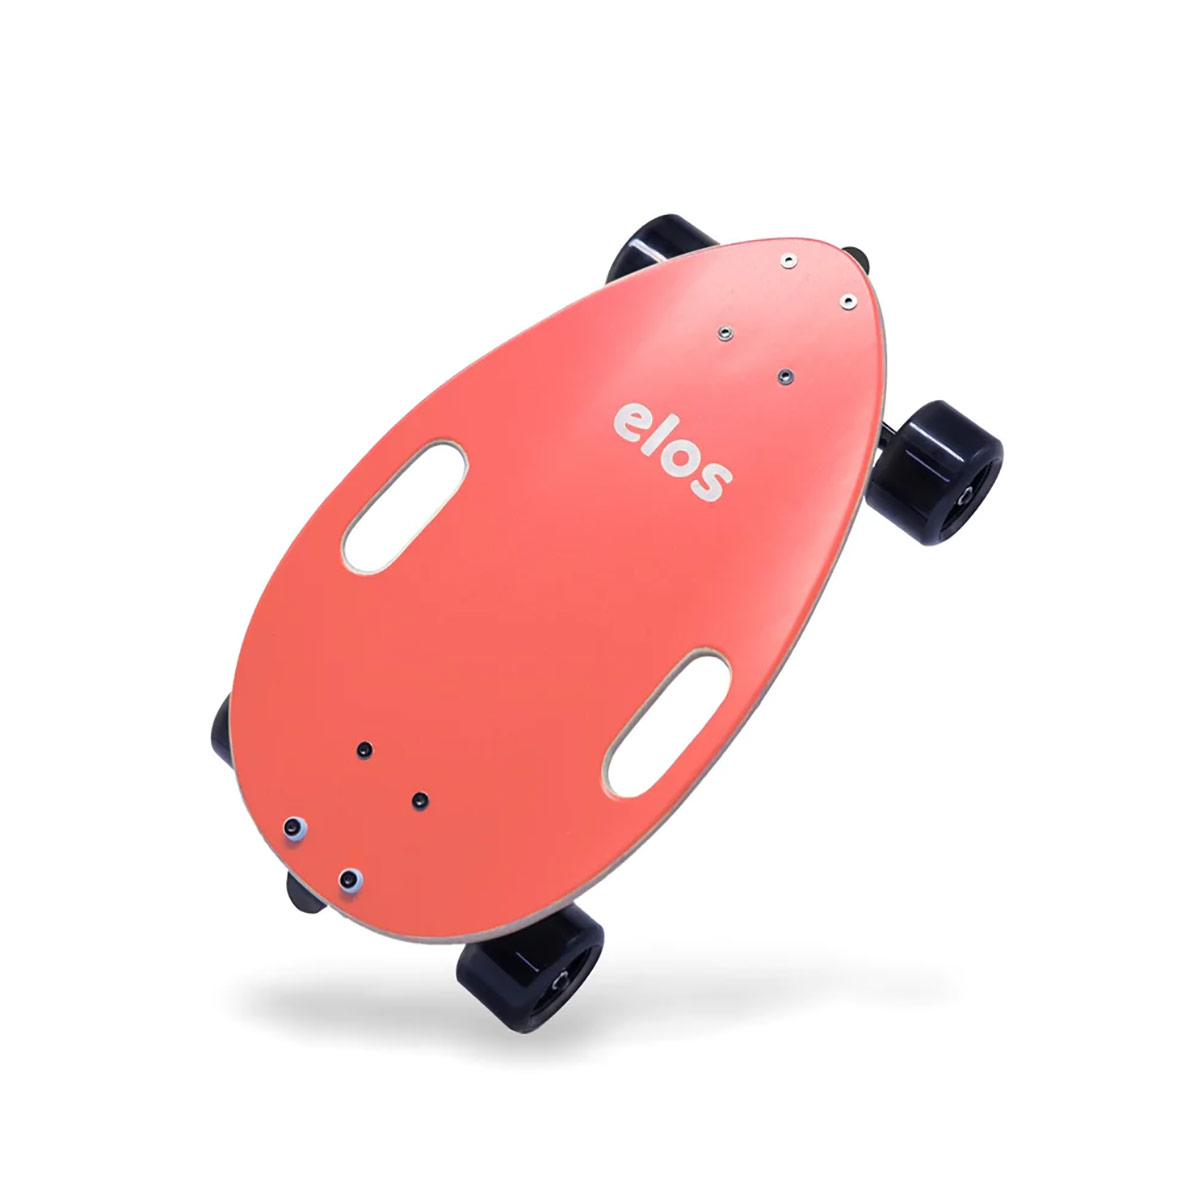 イロス Elos Complete Skateboard Coral Red(コーラルレッド) 収納バック付き EL723 の特長 【超ポータブル】Elosライトウェイトは軽さたったの4lbs(1.85kg)！スケートボードの持ち運びでヘトヘトになってしまう心配がないから、どこへ行くにもElosと一緒！ハンドル付きだから気軽に持ち運べ、大人から子供までクルーズが楽しめます。【簡単マスター】おしゃれなデザインの超幅広デッキが格別の安定感をもたらし、初心者でも簡単にマスターできます。経験者には、自由自在なコントロールとスムーズなライドをお楽しみいただけます。重心を低くすることで、 たくましい72mmウィールと調節可能トラックが、今までにないクルーズ感を演出！【最強の安定感】超軽量クルーザーElosで街や公園でのスムーズライドが可能な理由は、大きくてソフトなウィール。膝や関節にも優しいライドが楽しめます。【日常への工夫を凝らしたスケートボード】「ライフスタイル」をデザインしたスケートボードです。特殊なタッチセーフコーティングはグリップ感があるのに、衣服や靴を傷つける恐れがありません。トラックにリフレクター(反射板)を装備しているため、日夜問わず安心して楽しめます。コンパクトだから収納も楽々。車の中やバックパックにサッとしまえ、デッキ裏面のドックを使えば、簡単に立て掛けることができます。 イロス Elos Complete Skateboard Coral Red(コーラルレッド) 収納バック付き EL723 の商品情報 素材 デッキ：7層 カナダ産メープル